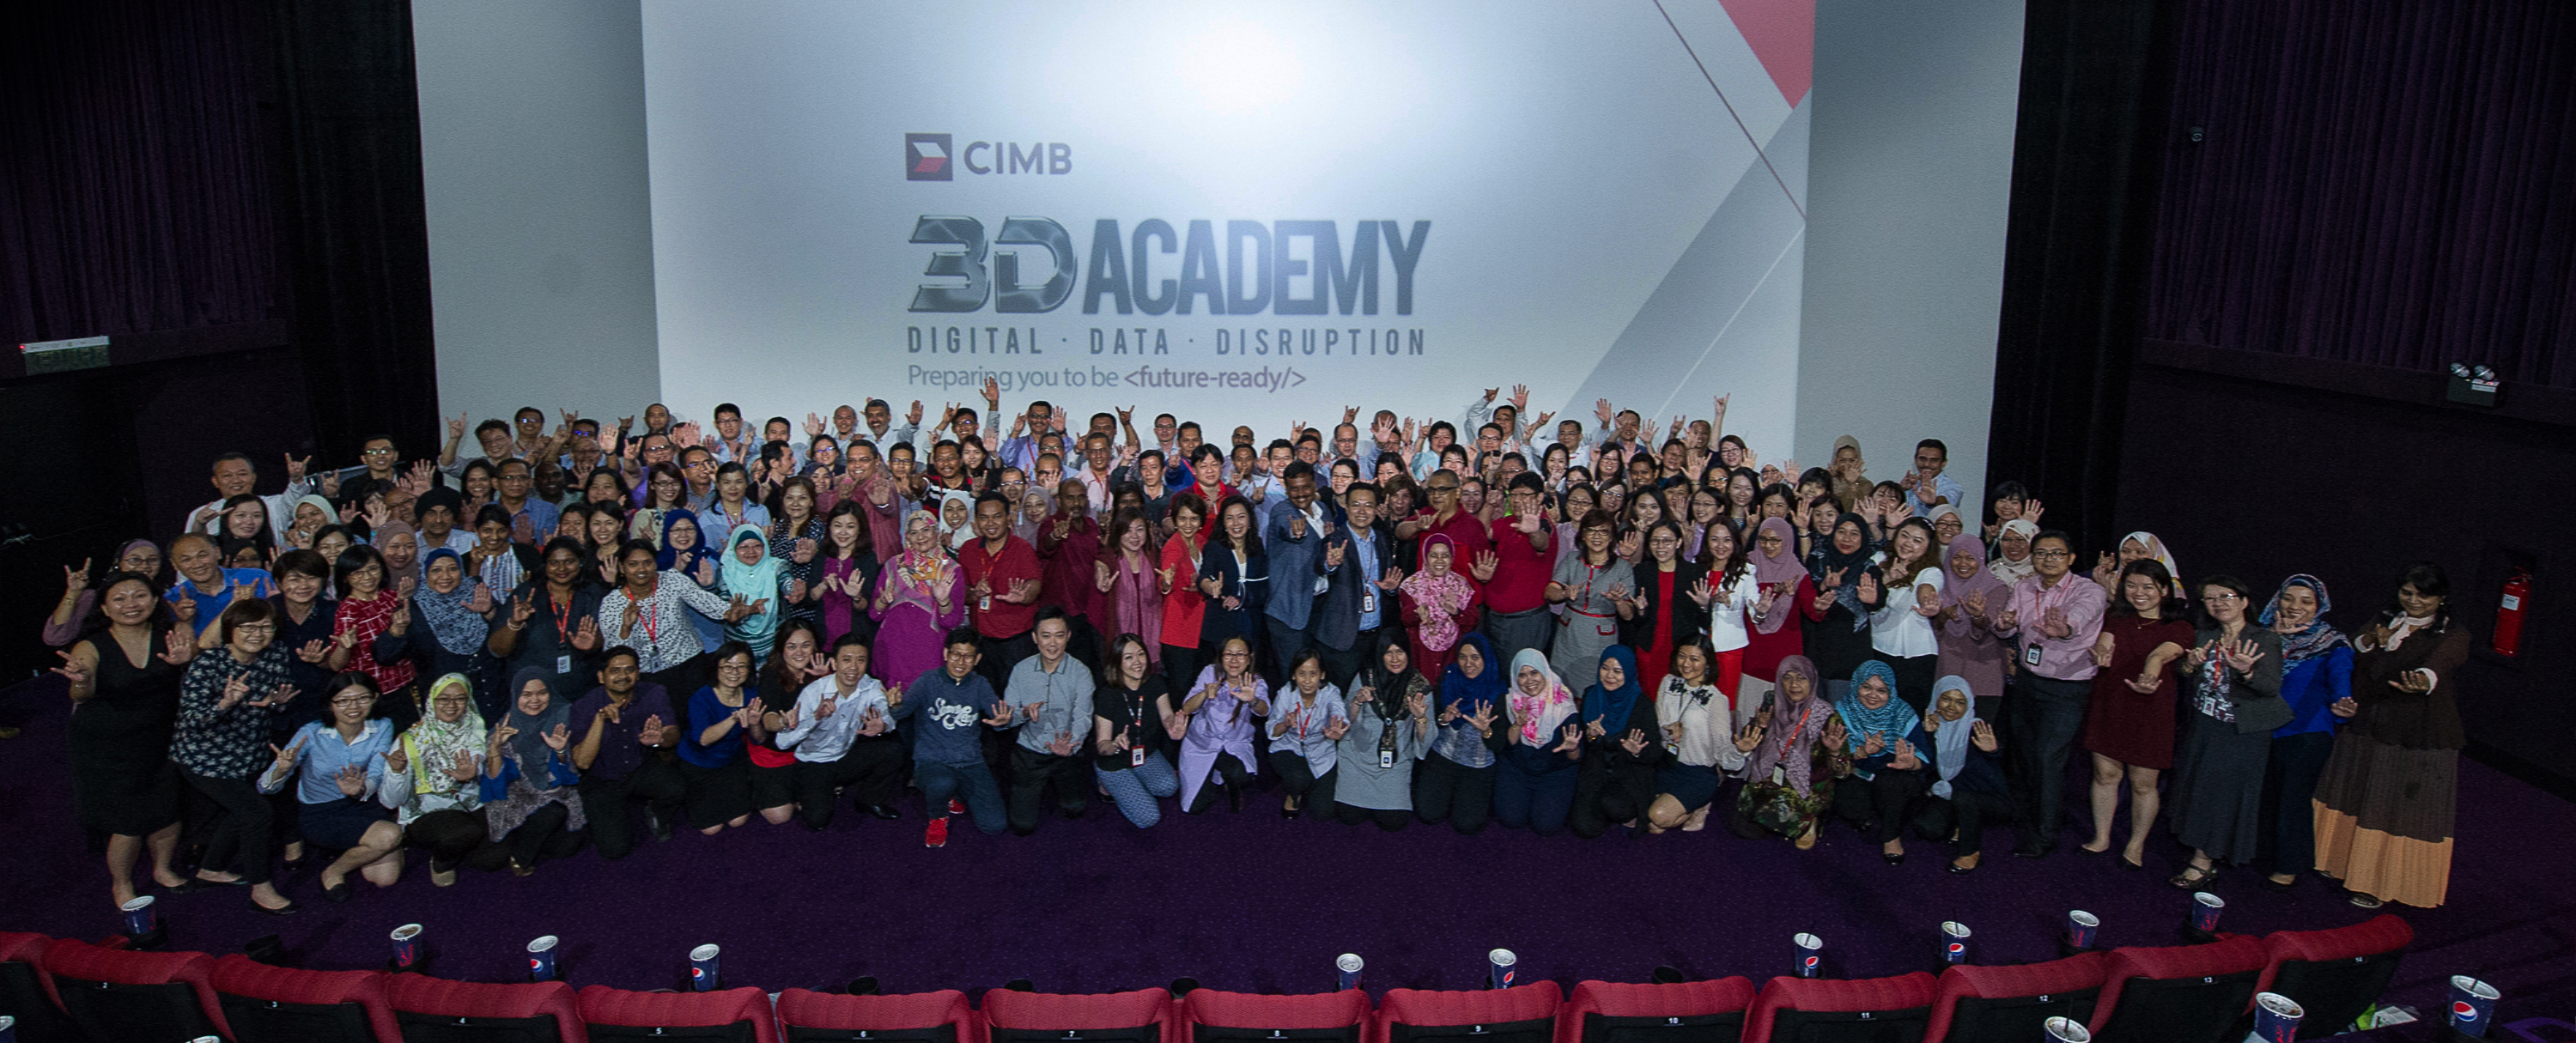 CIMB 3D Academy